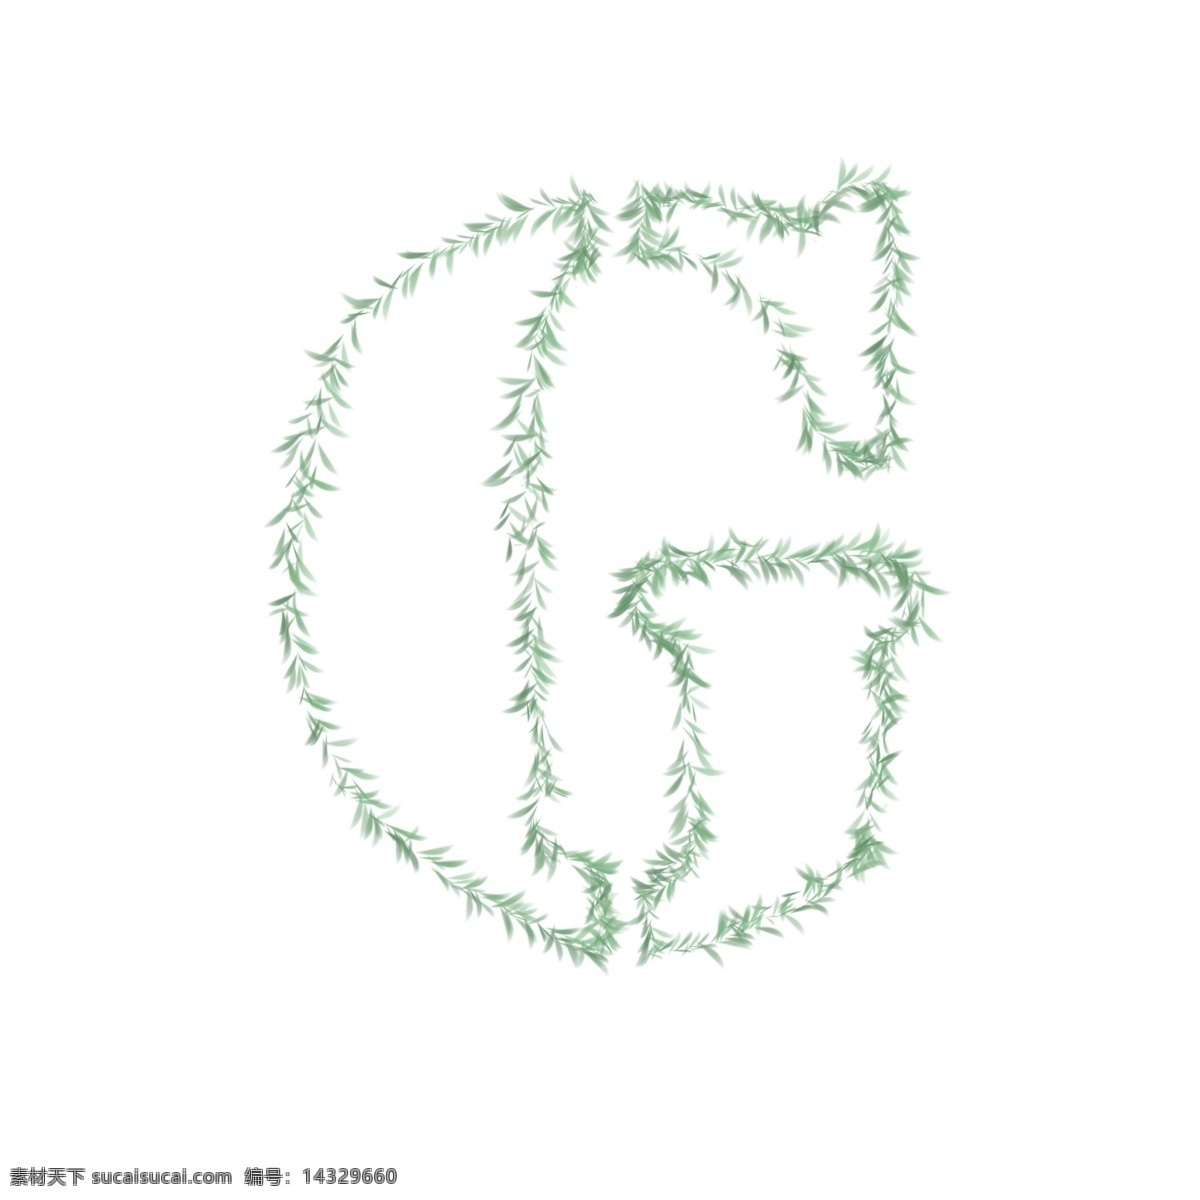 手绘 树叶 造型 字母 g 二十四字母 树叶g 简单 简单设计 手绘设计 英文字母设计